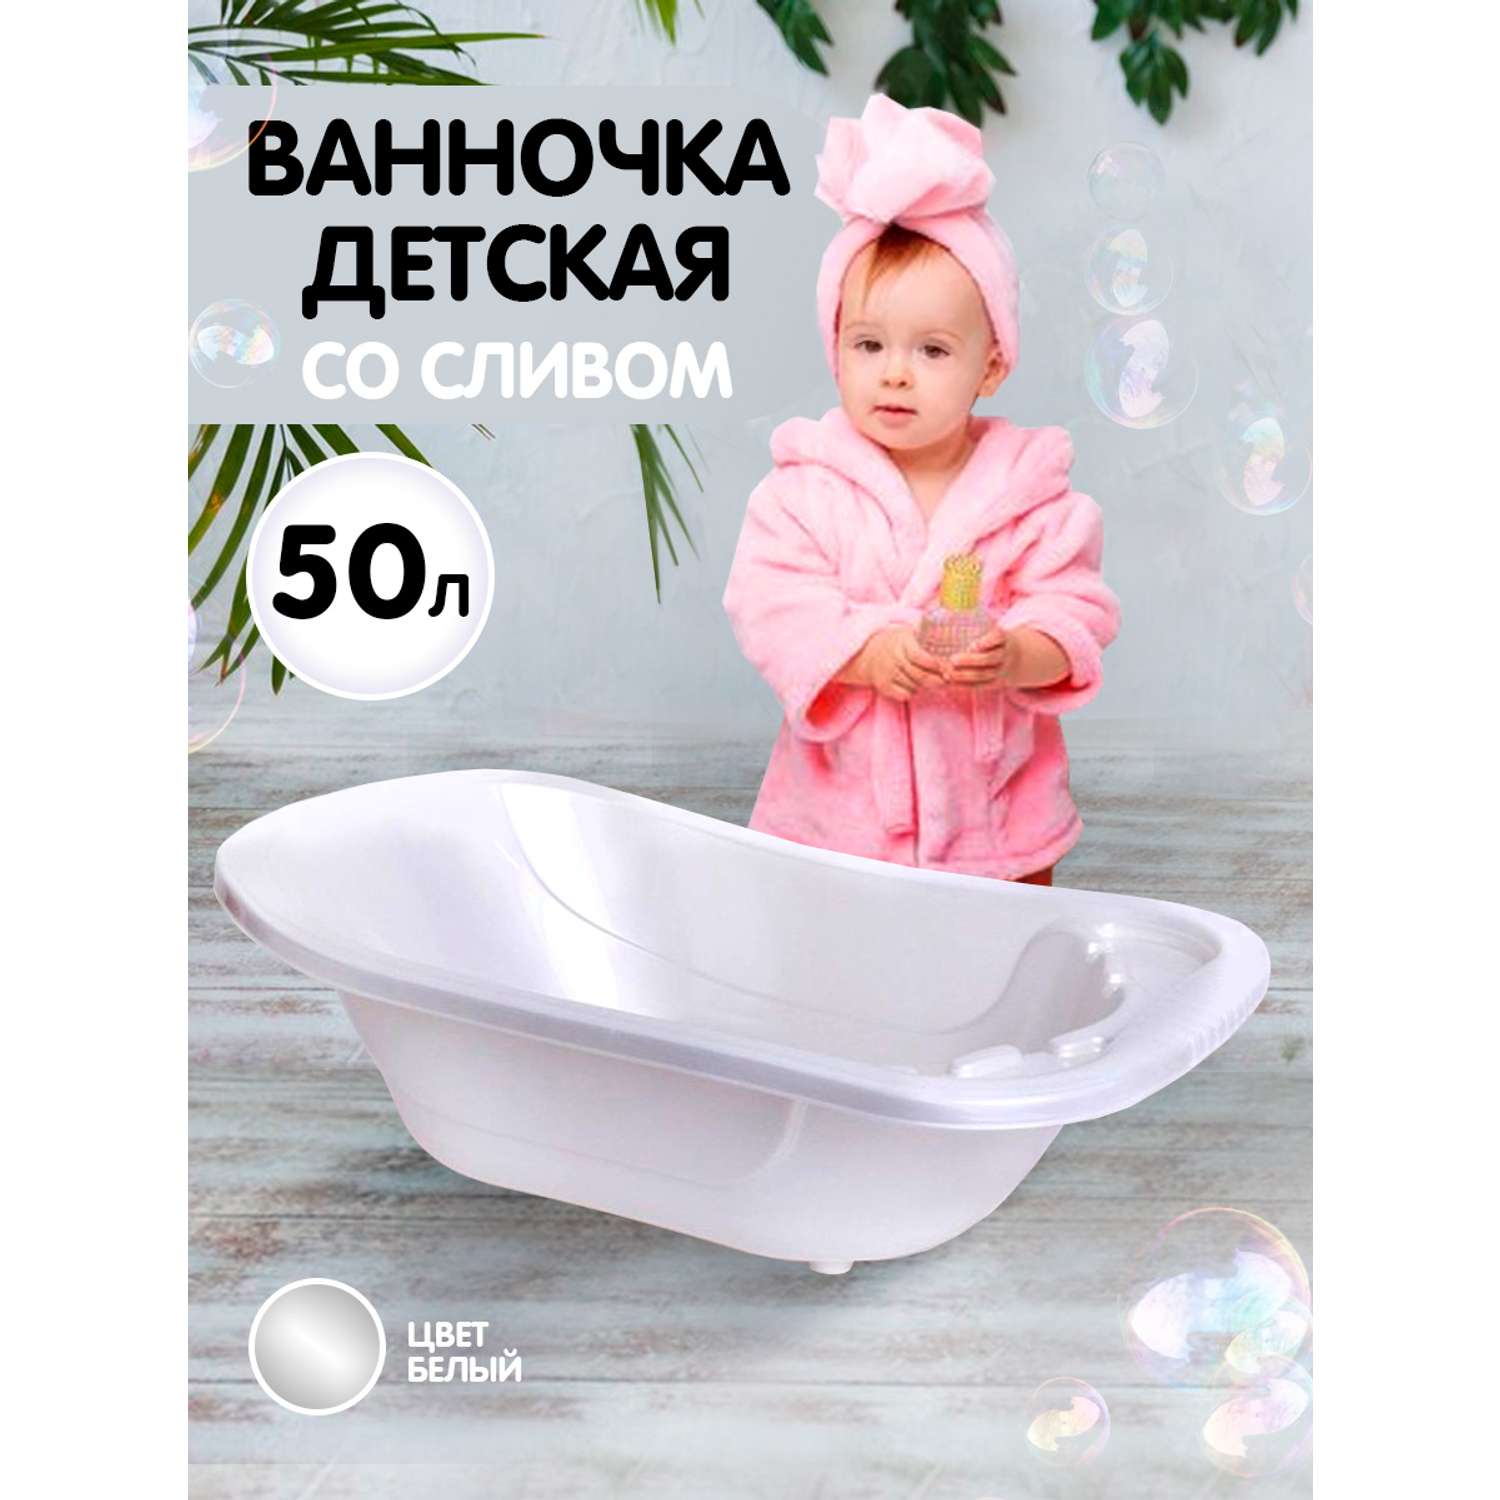 Ванна детская elfplast для купания со сливным клапаном белый перламутр 50 л - фото 2